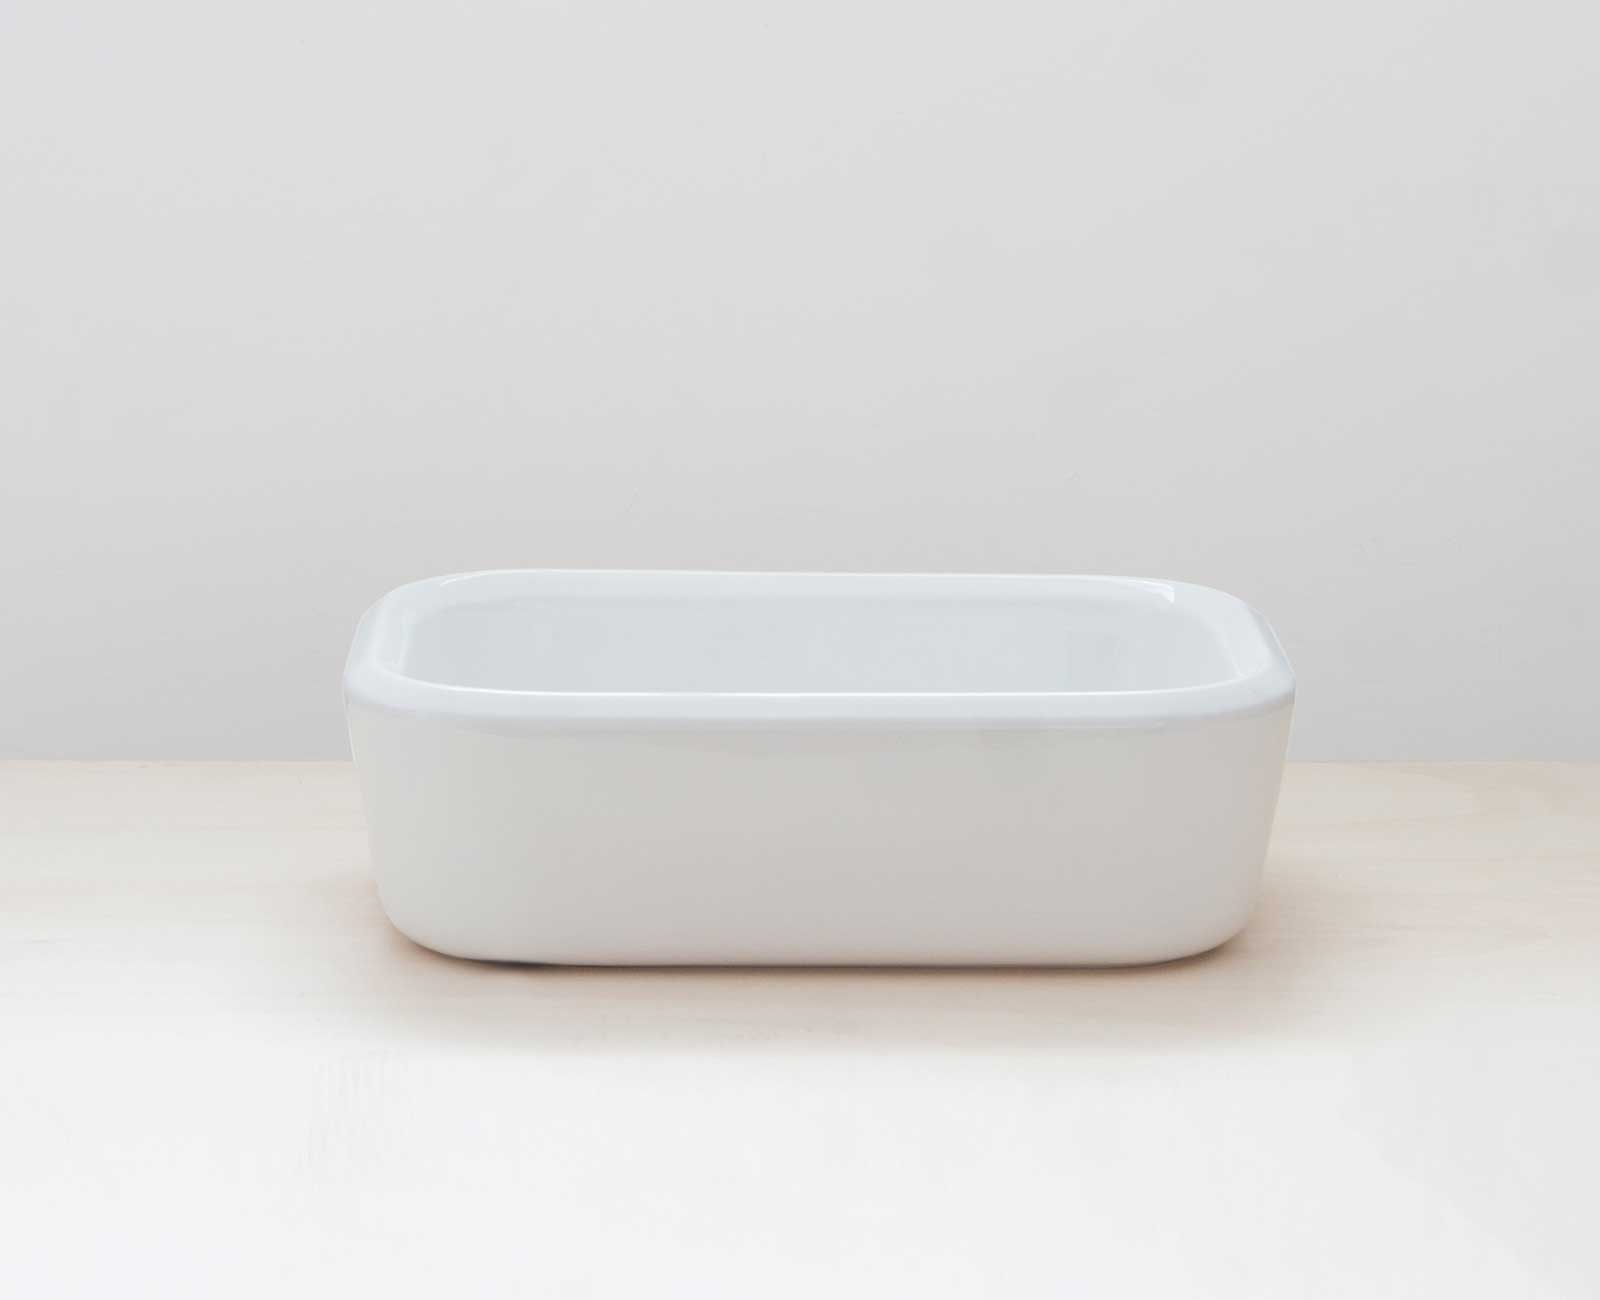 Pencil ceramic washbasin rectangular